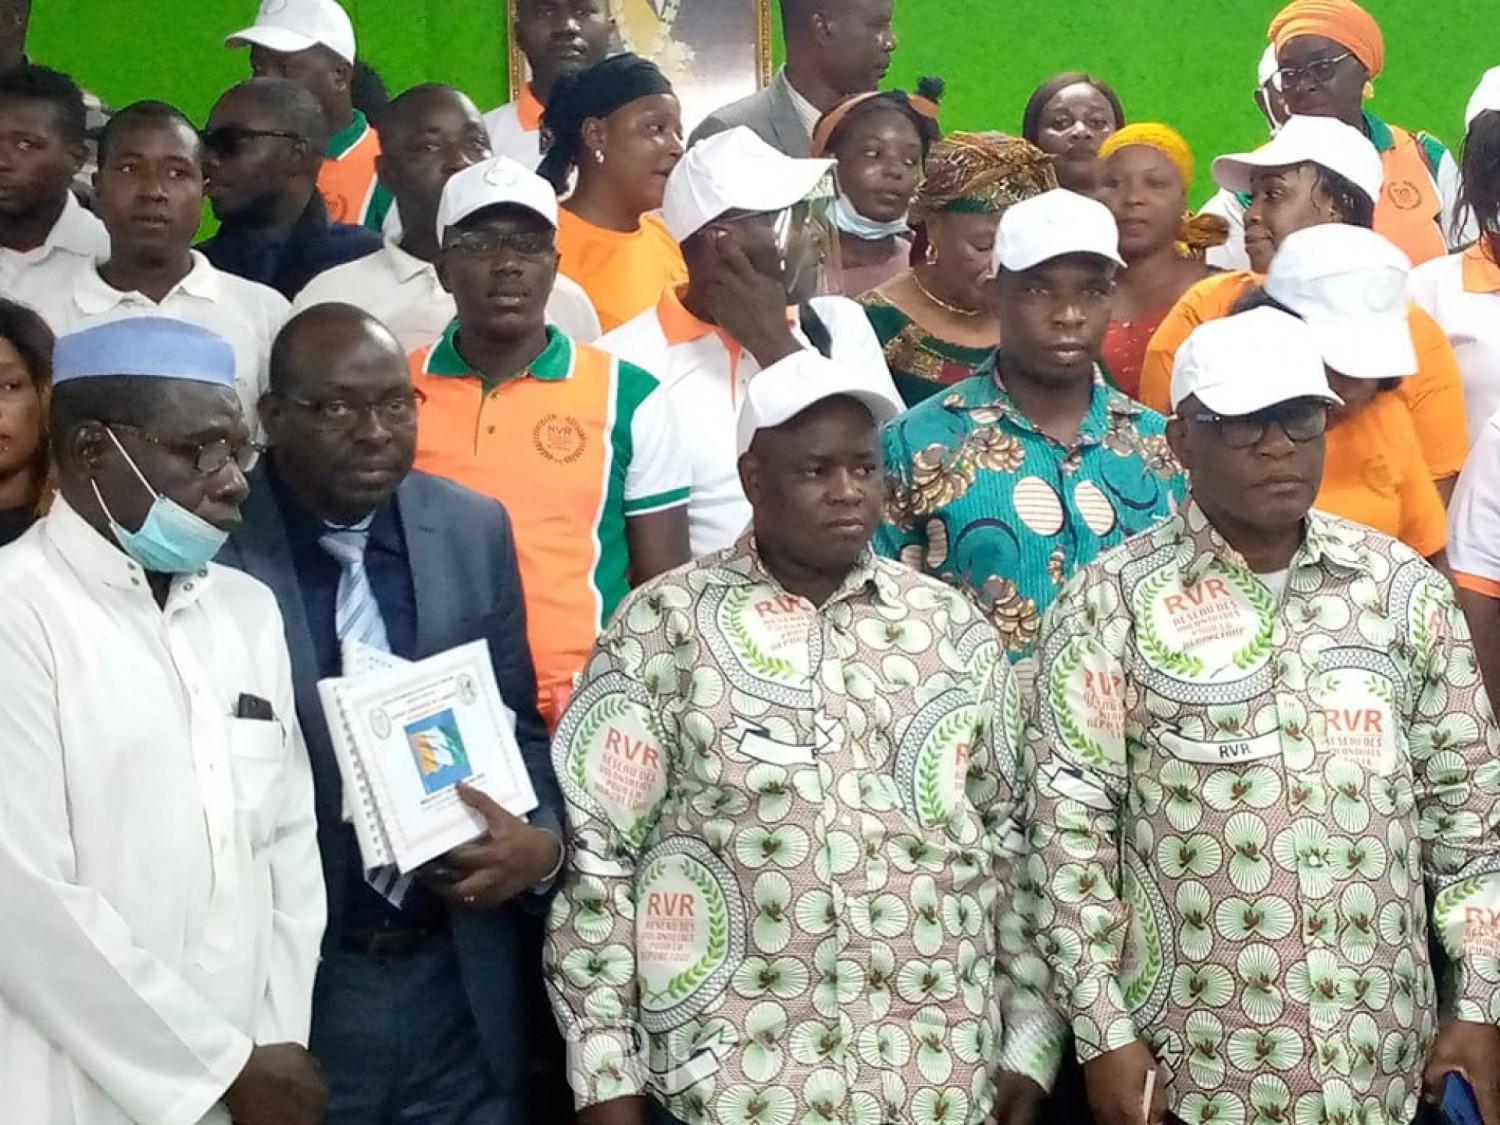 Côte d'Ivoire : Election présidentielle, le mouvement RVR apporte un appui considérable au candidat du RHDP pour sa victoire au premier tour